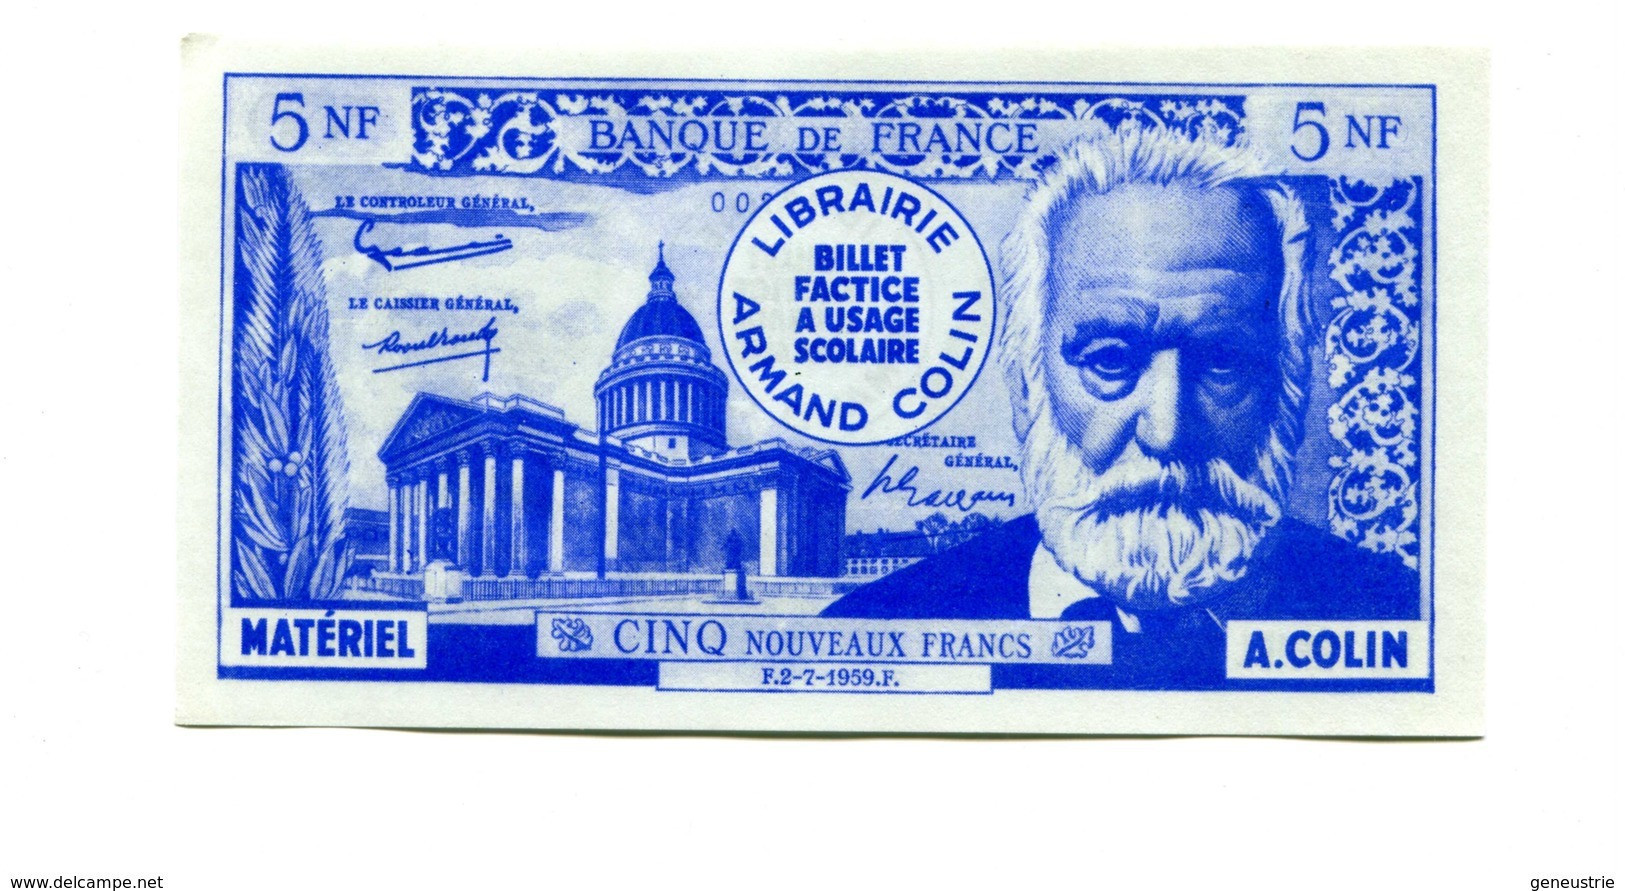 Série de 4 billets scolaires école (de 10000/100NF à 500/5NF) 1959 - Armand Colin - School bank note